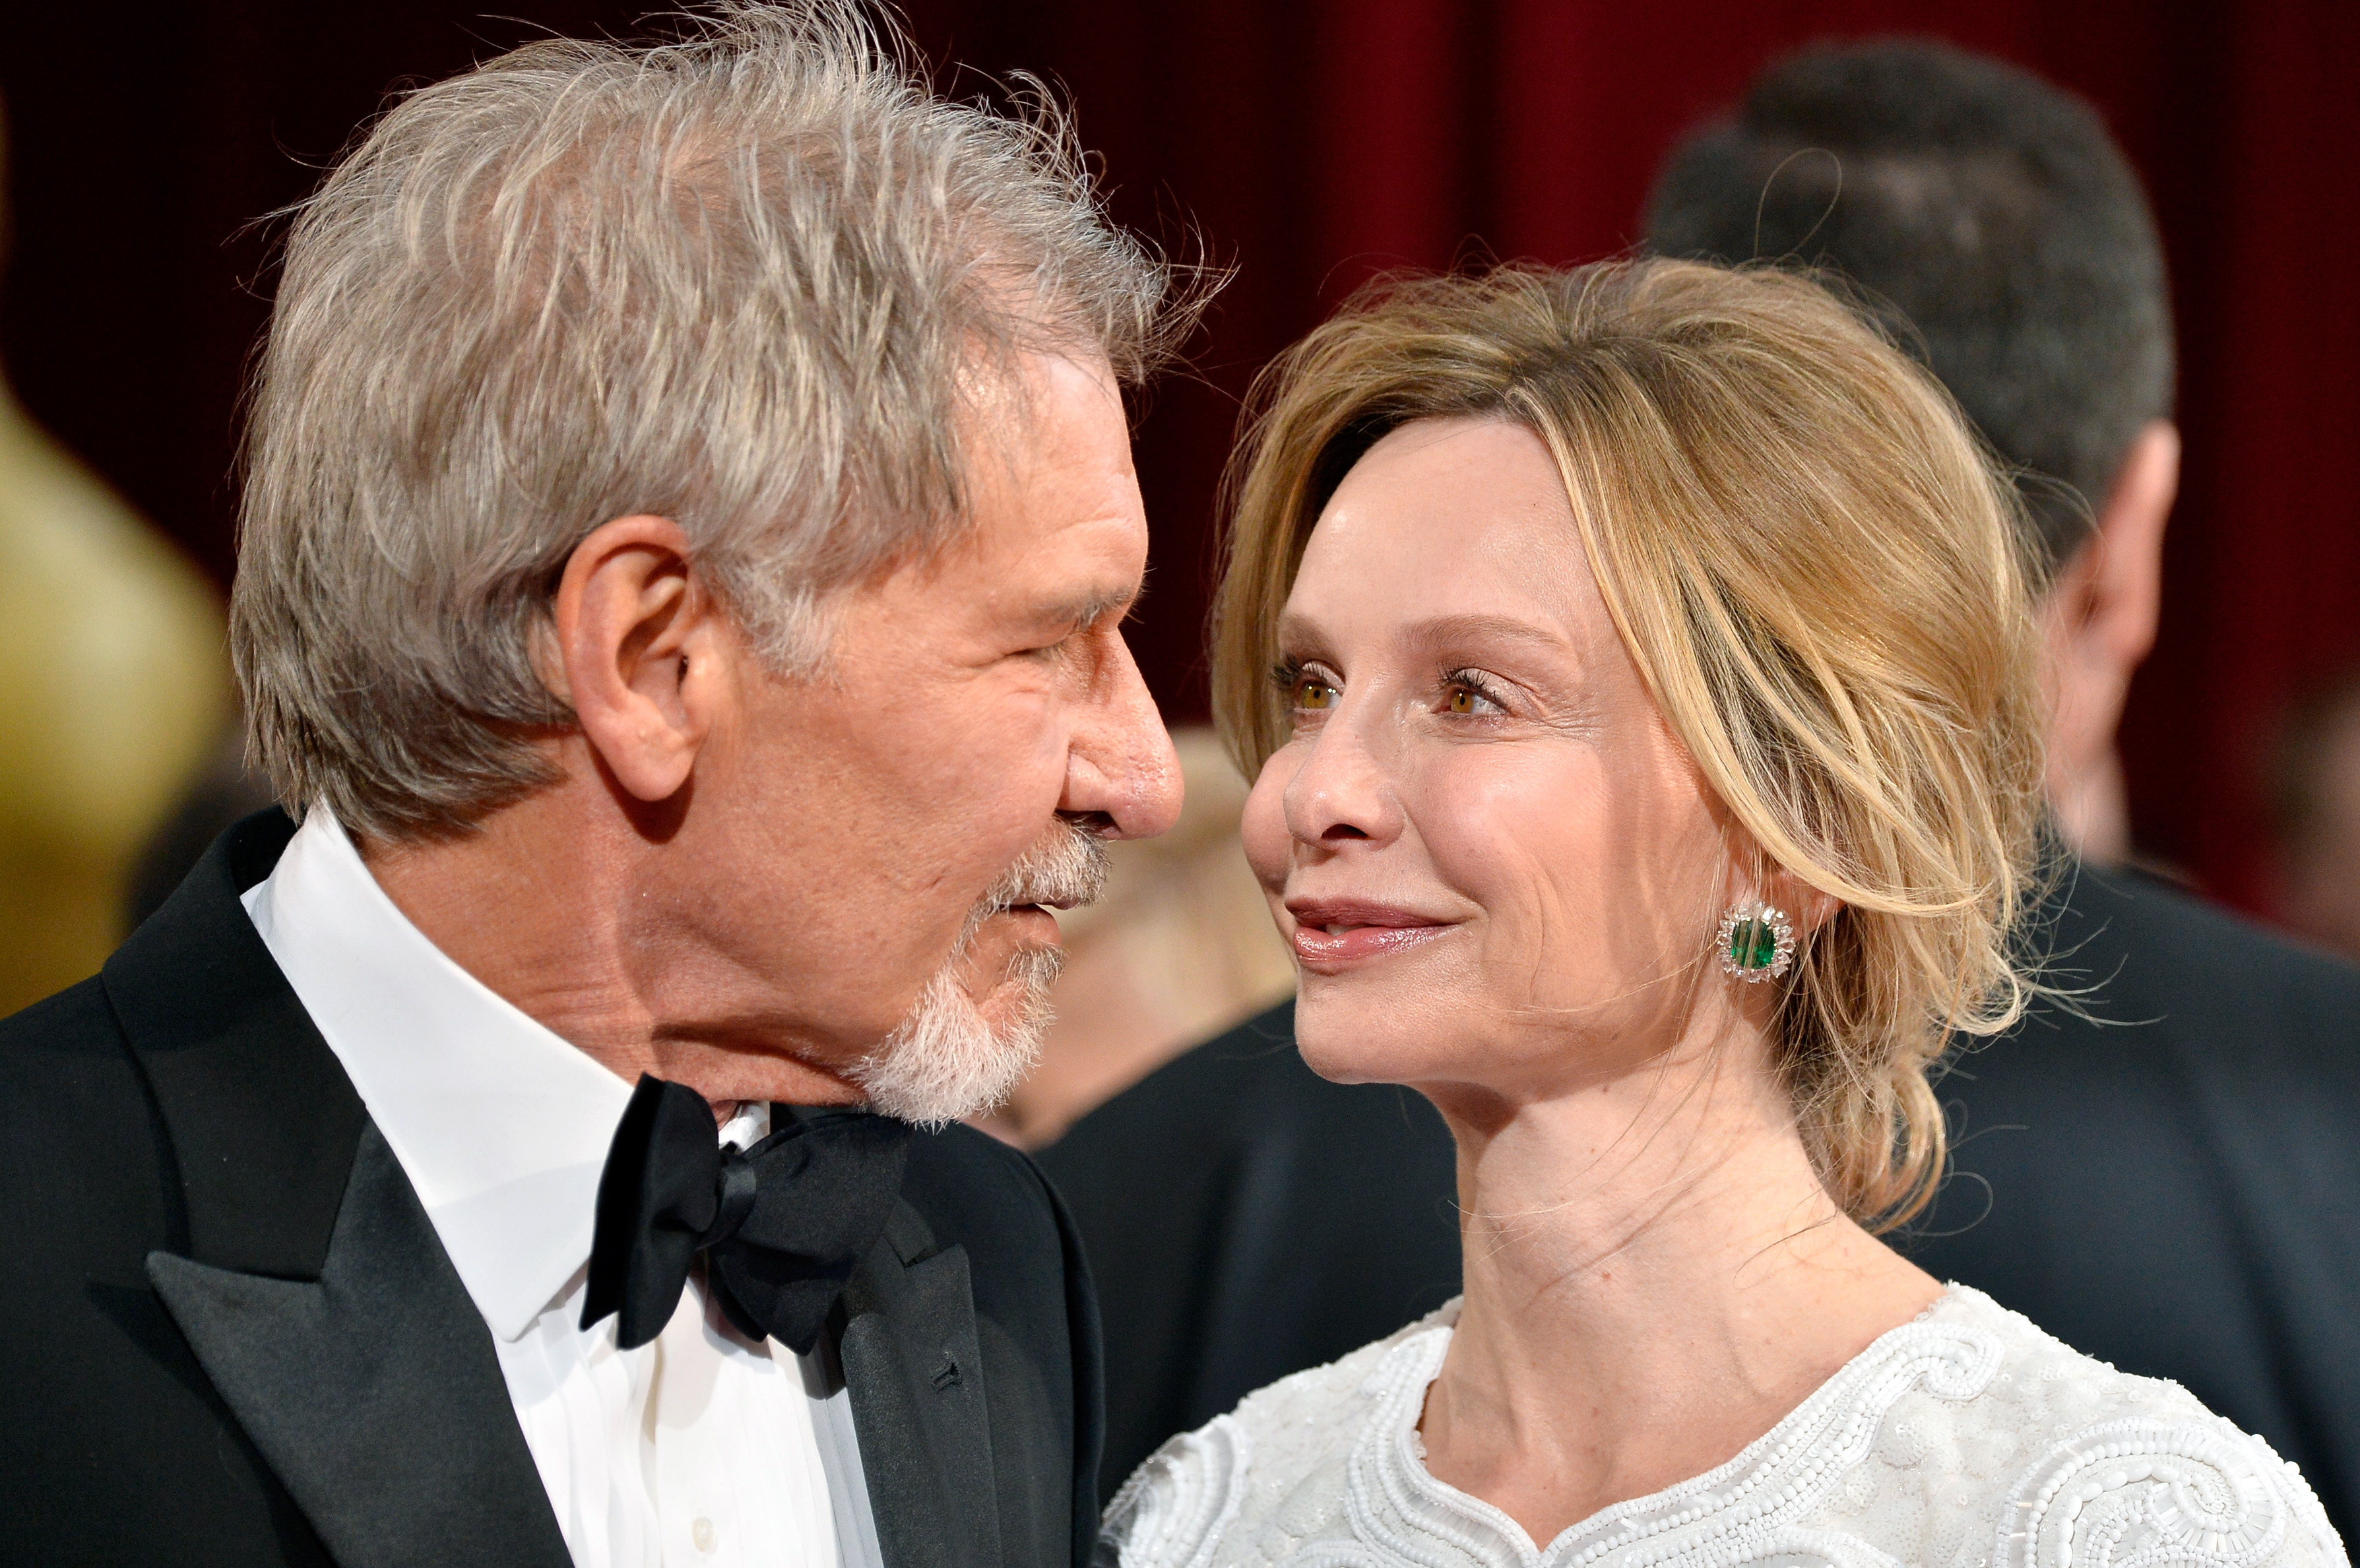 Harrison Ford und Calista Flockhart bei den Oscars am 2. März 2014 in Hollywood, Kalifornien | Quelle: Getty Images